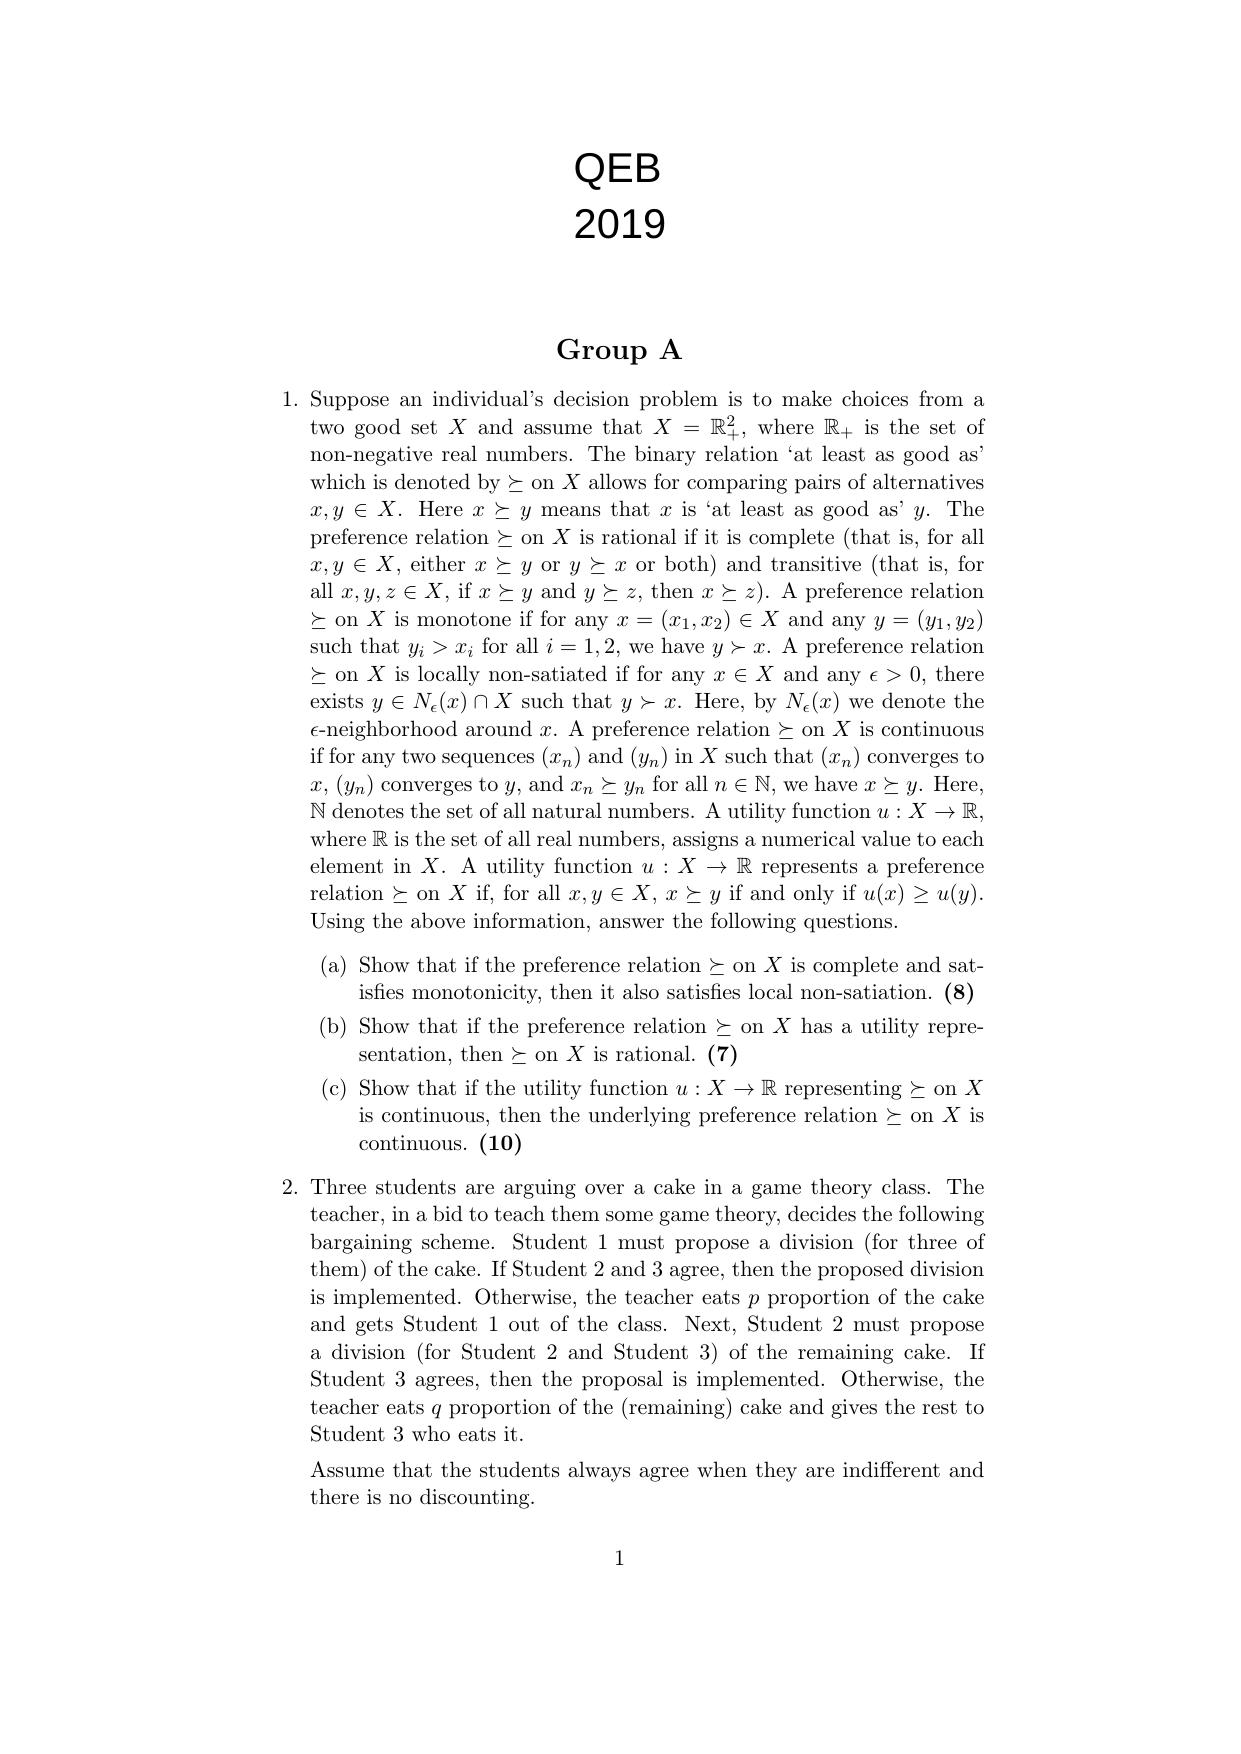 ISI Admission Test JRF in Quantitative Economics QEB 2019 Sample Paper - Page 1